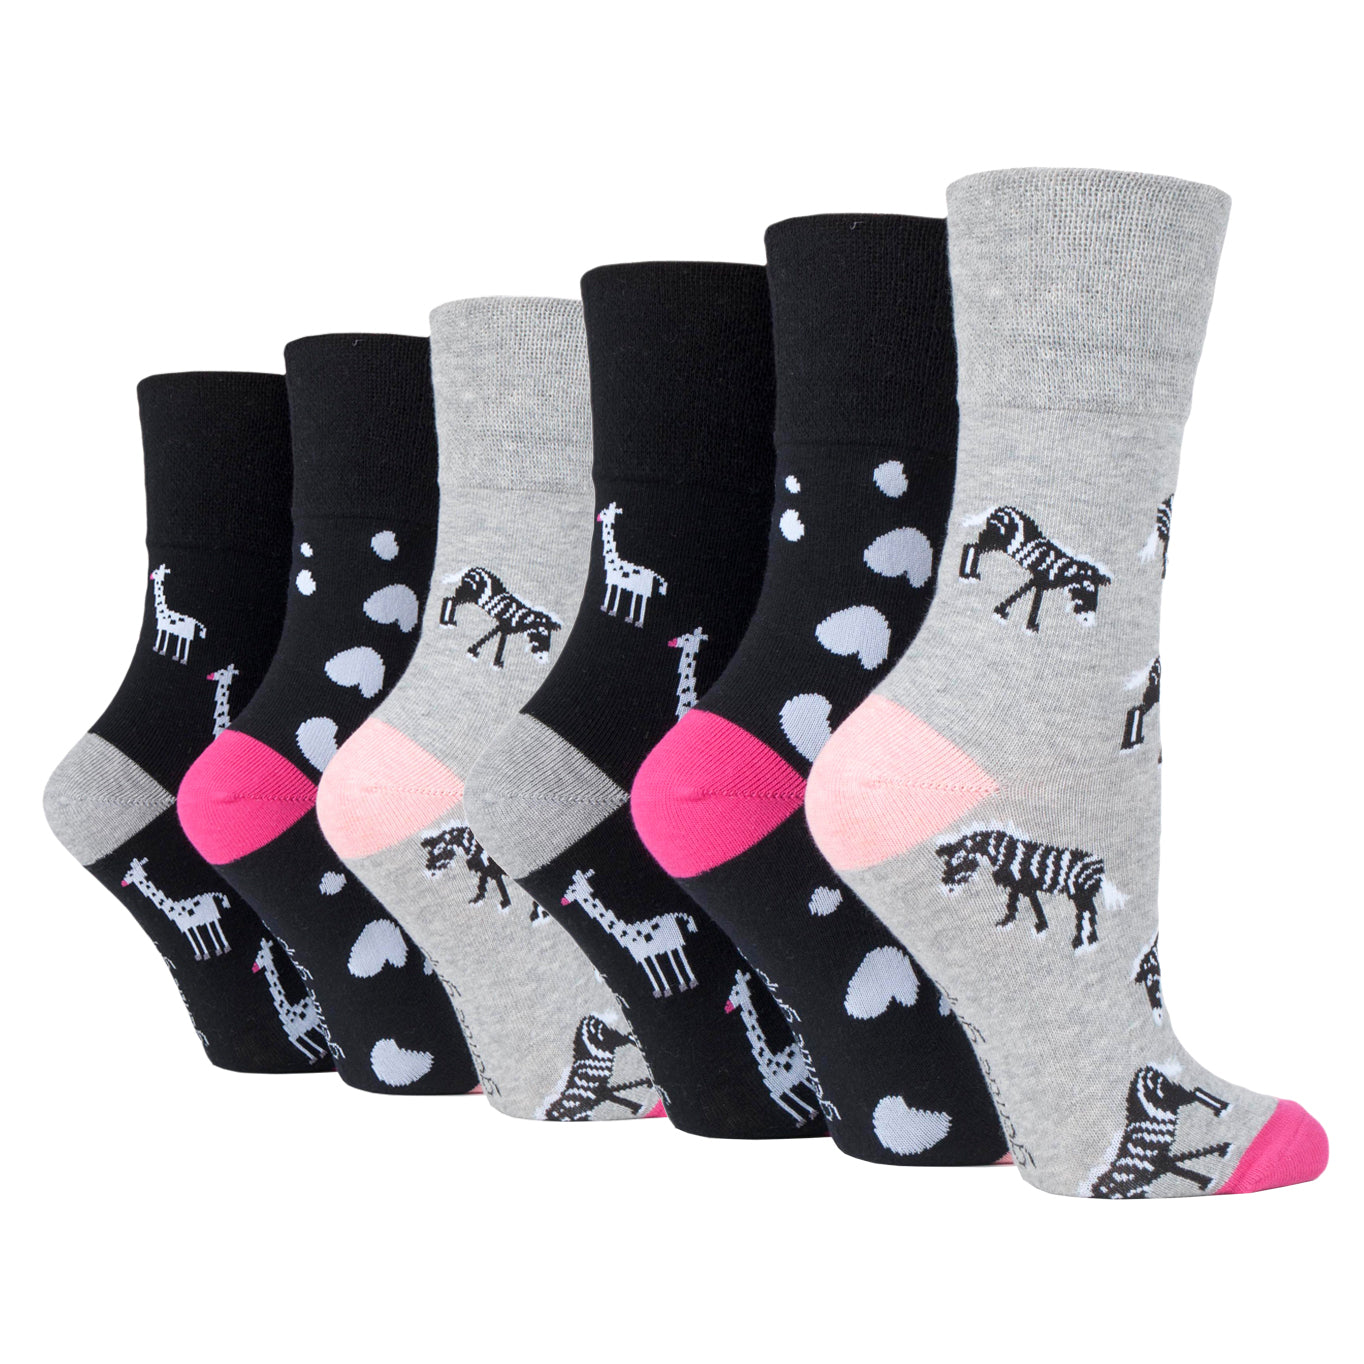 Gentle Grip 3 Pack Womens Socks, Ladies Socks